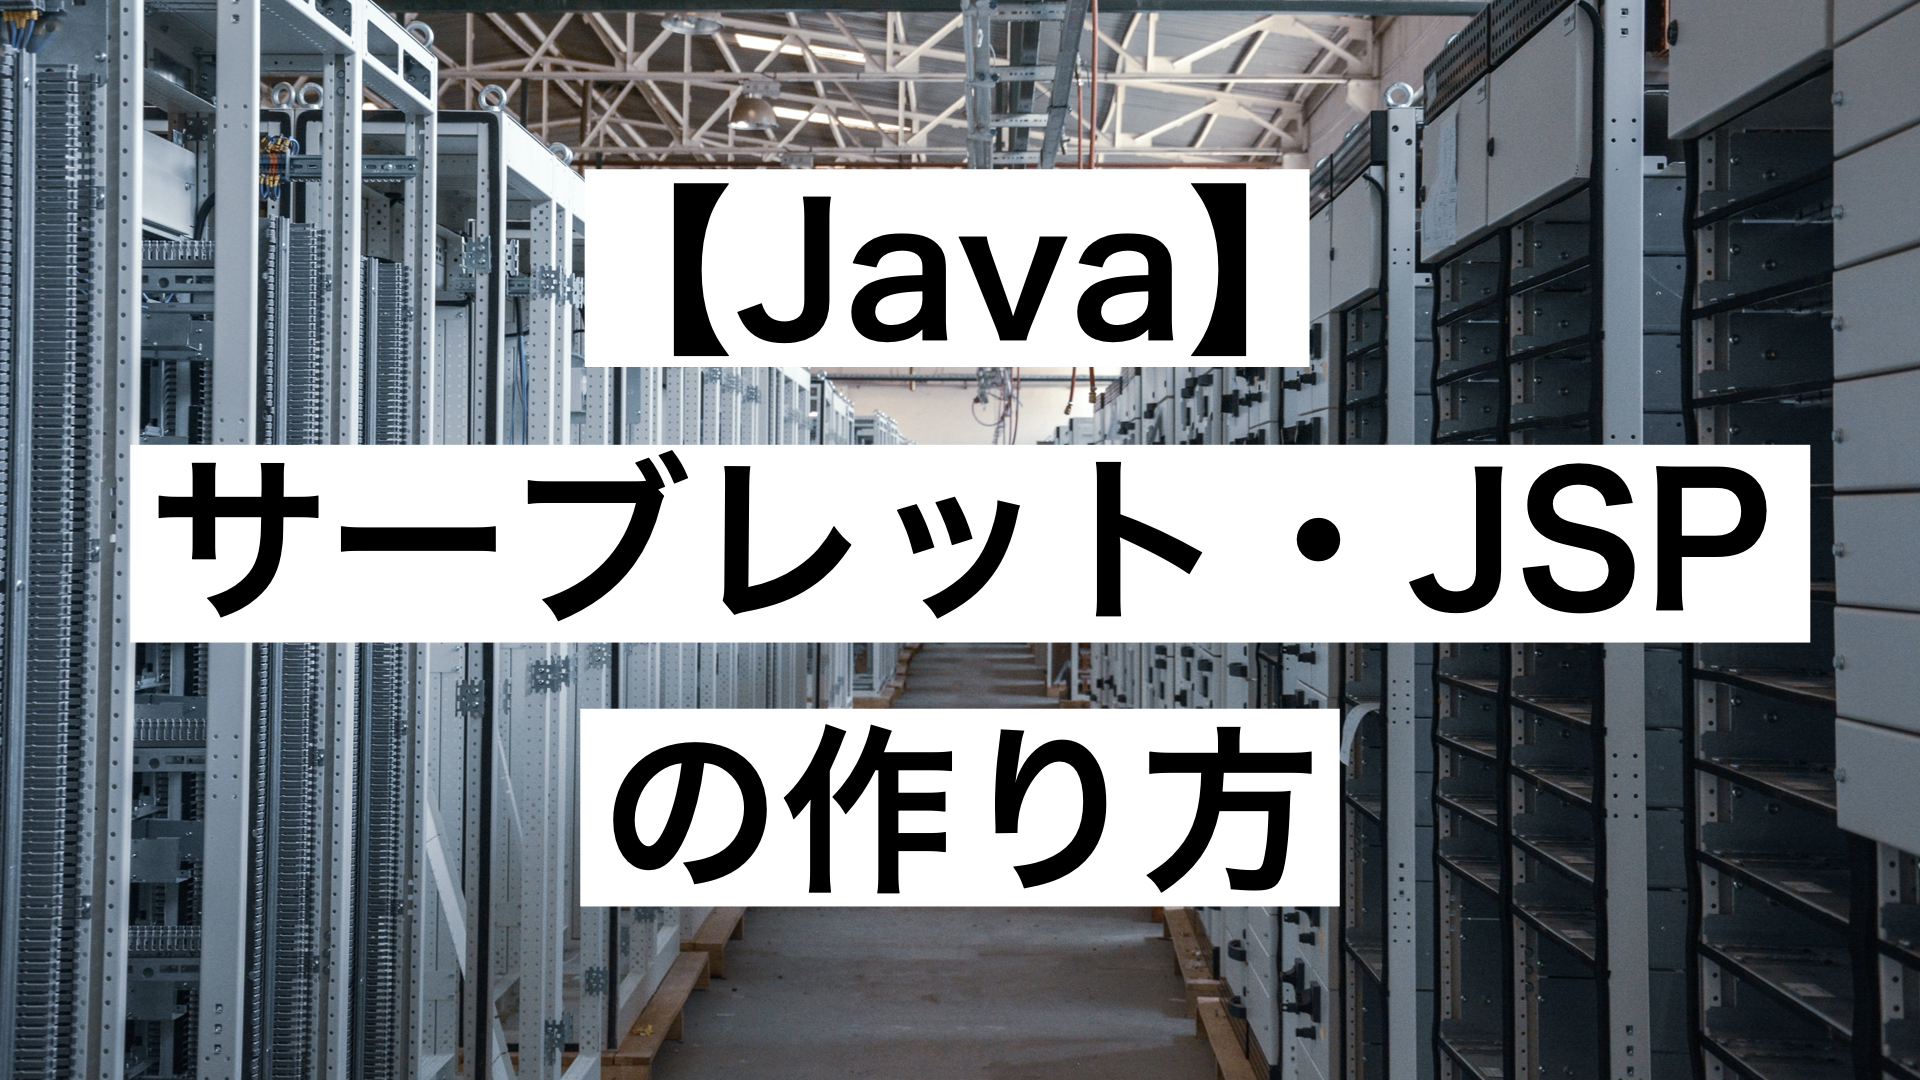 Java】サーブレット・JSPの作り方【Eclipse上での作成方法】 | もりブログ